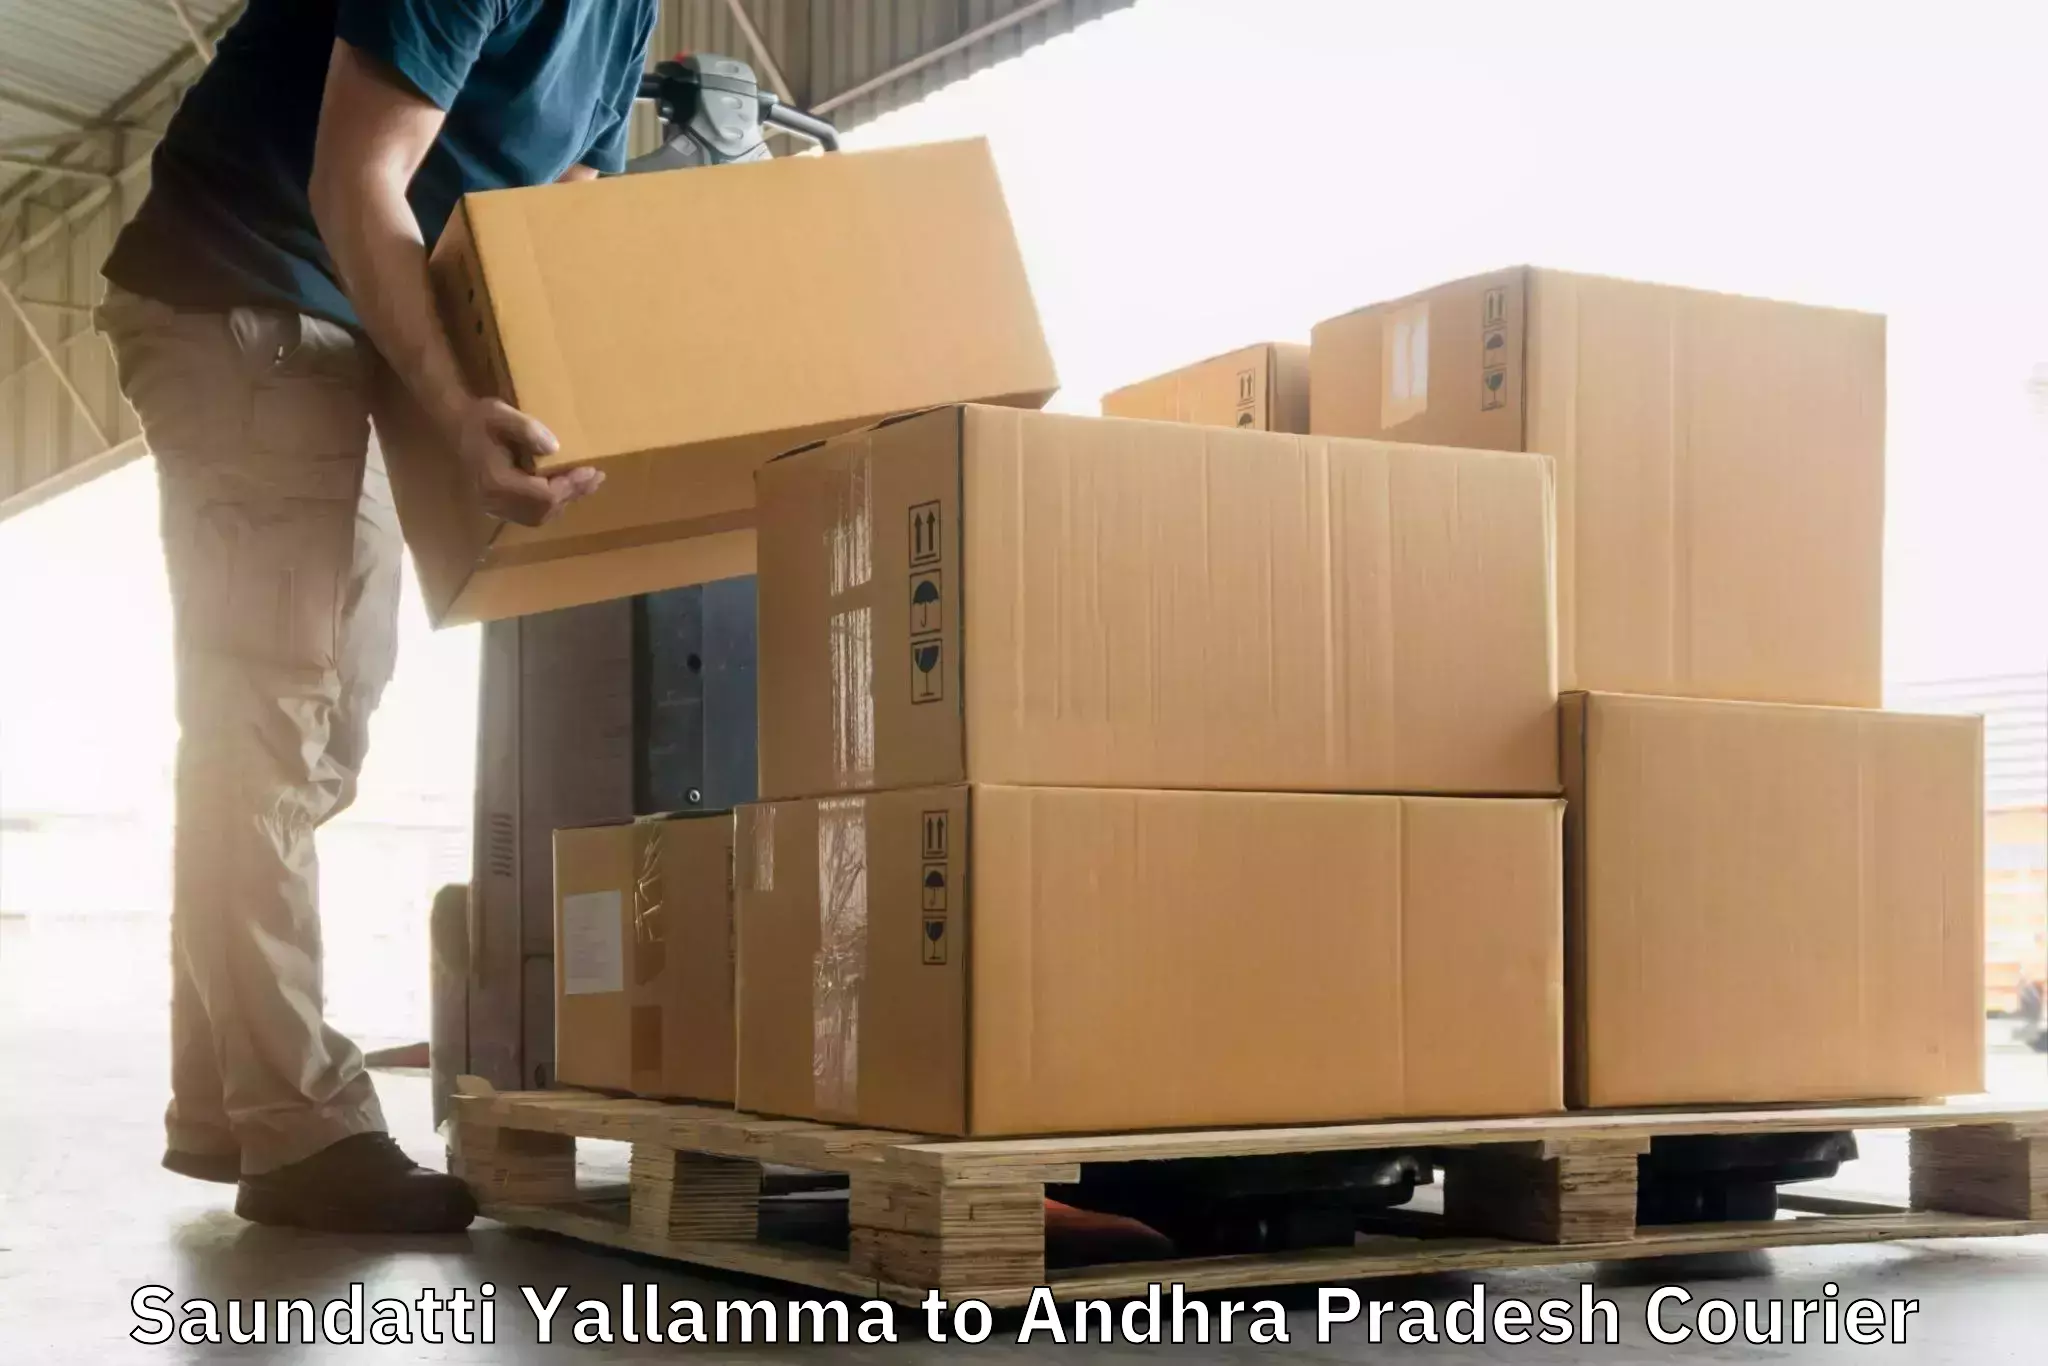 Nationwide parcel services Saundatti Yallamma to Bikkavolu